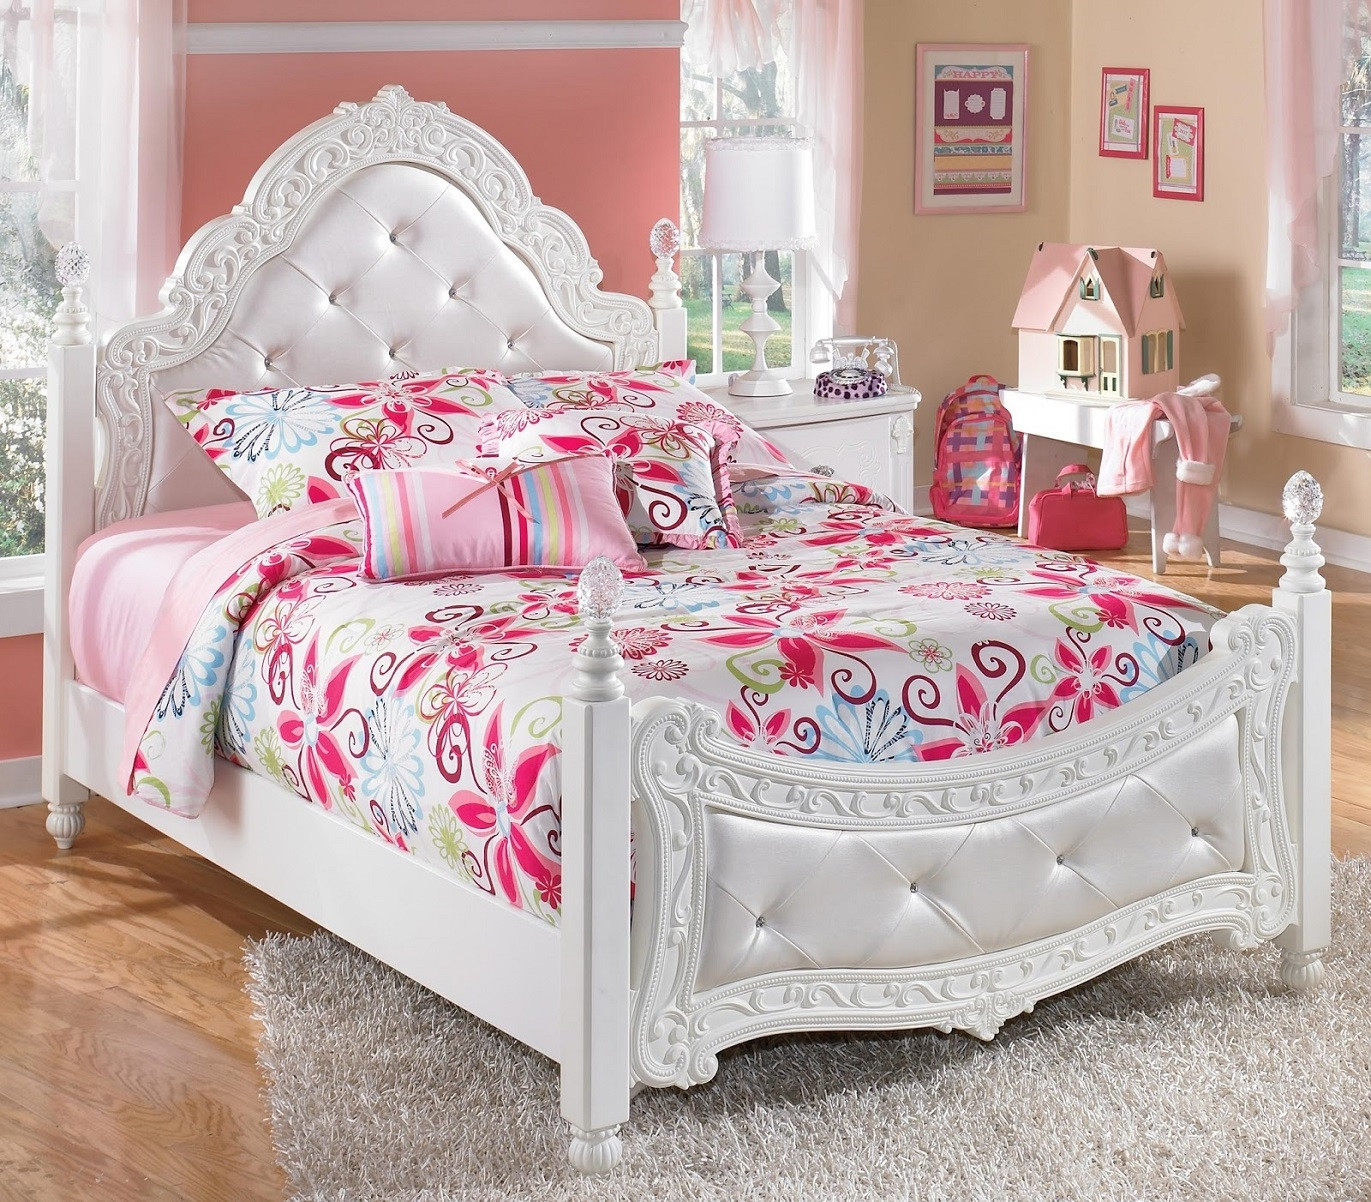 Girl Twin Bedroom Sets
 Bedroom Ashley White Unique Furniture Bedroom Sets For